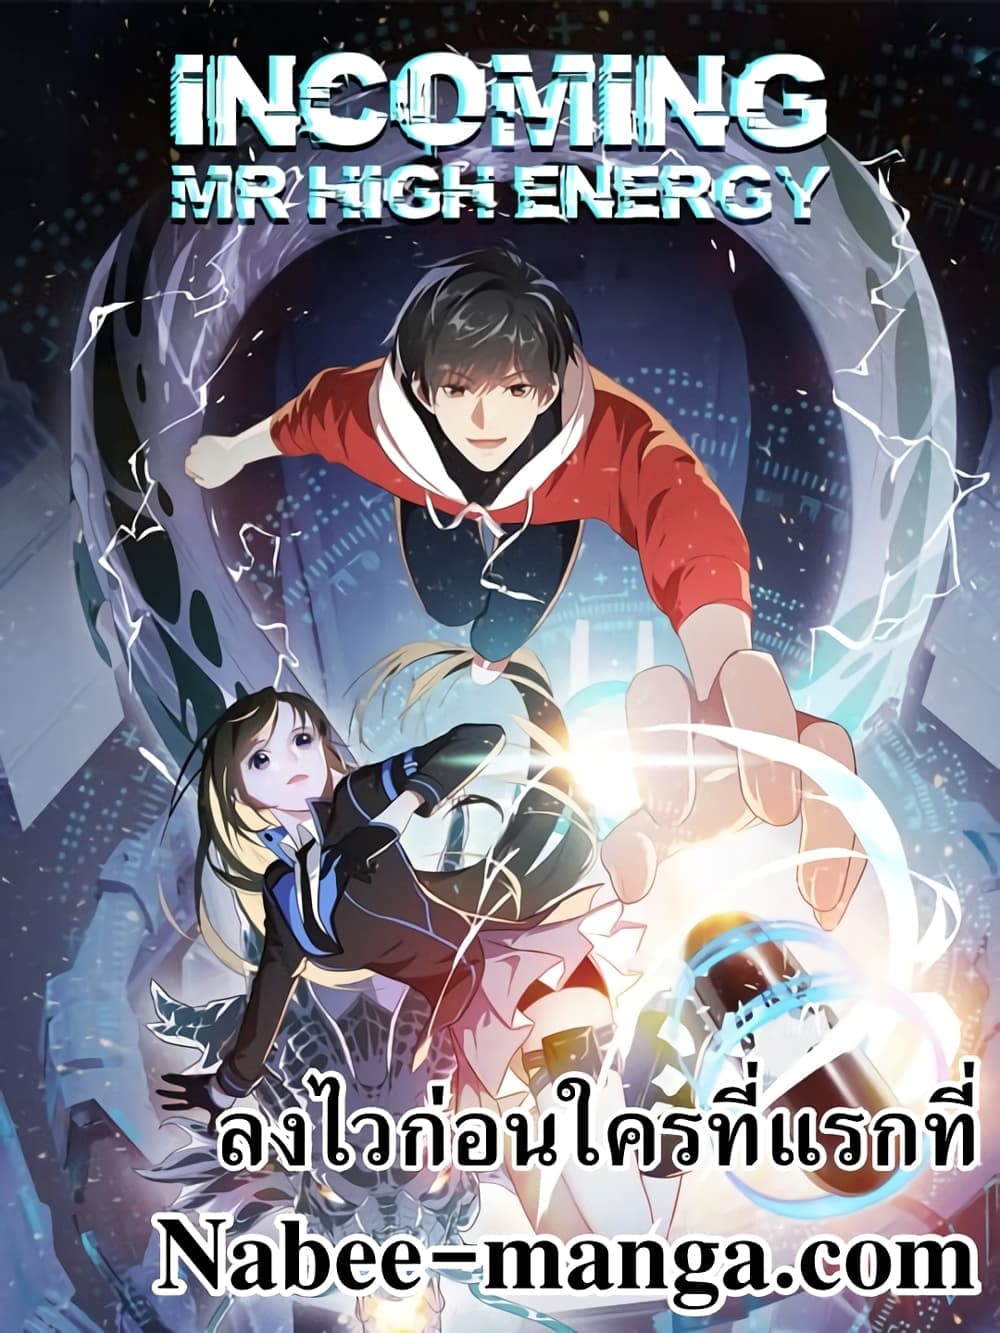 High Energy Strikes 305-305